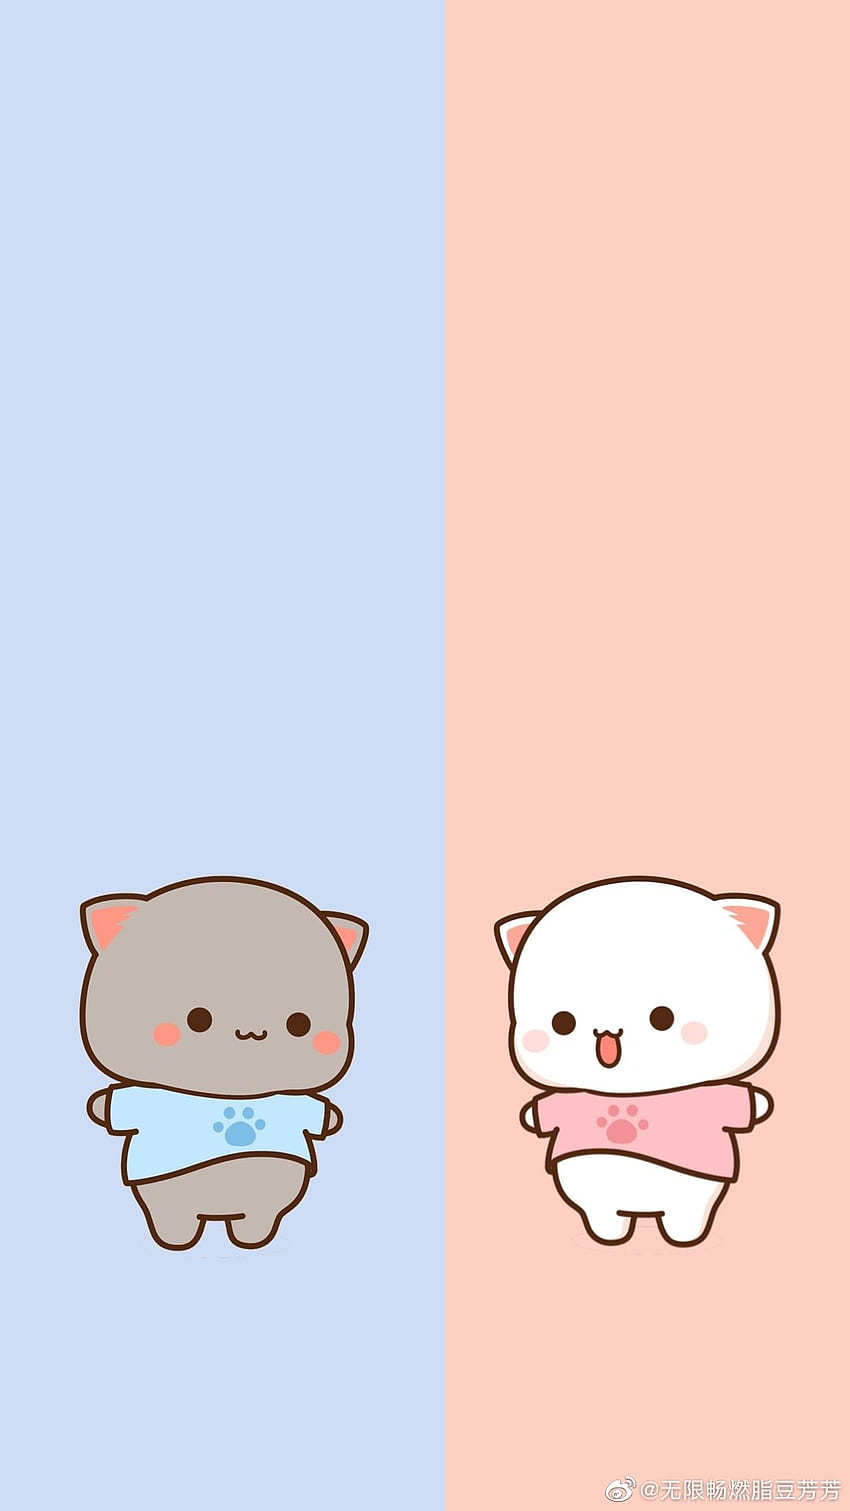 Mochi peach cat ideas. chibi cat, cute anime cat, cute cartoon HD phone wallpaper